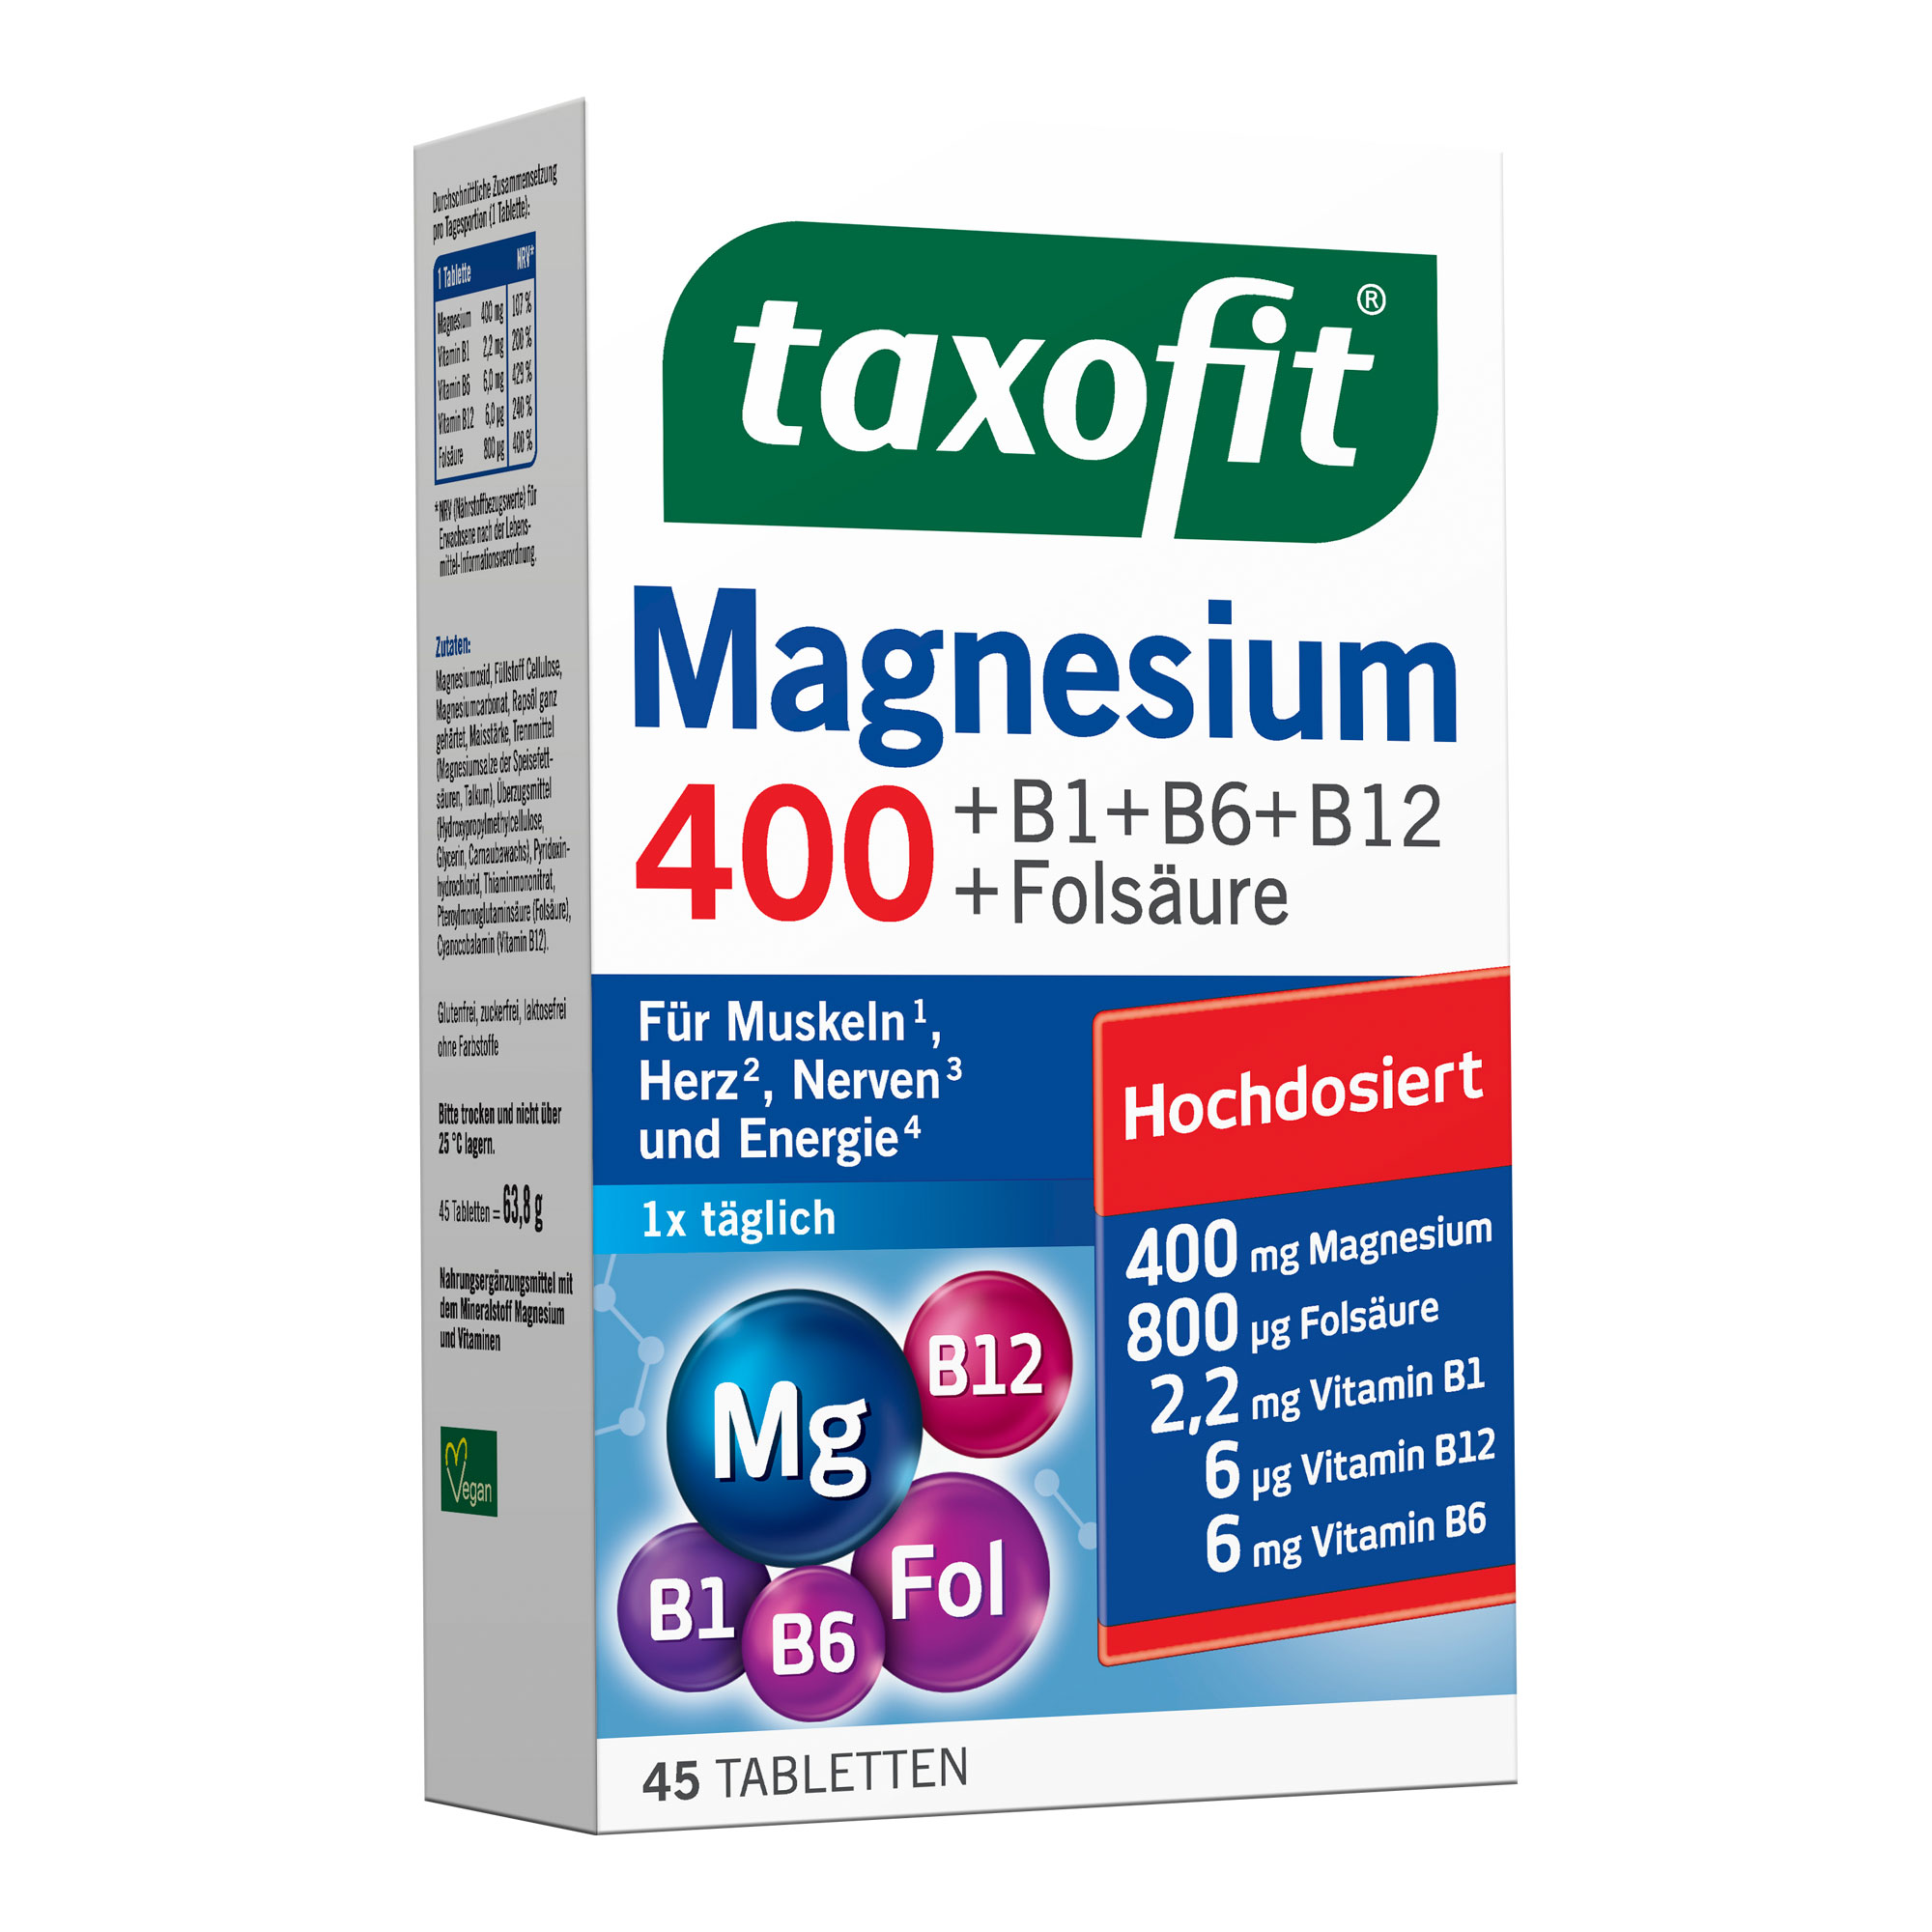 Nahrungsergänzungsmittel mit hochdosiertem Magnesium und Vitaminen.